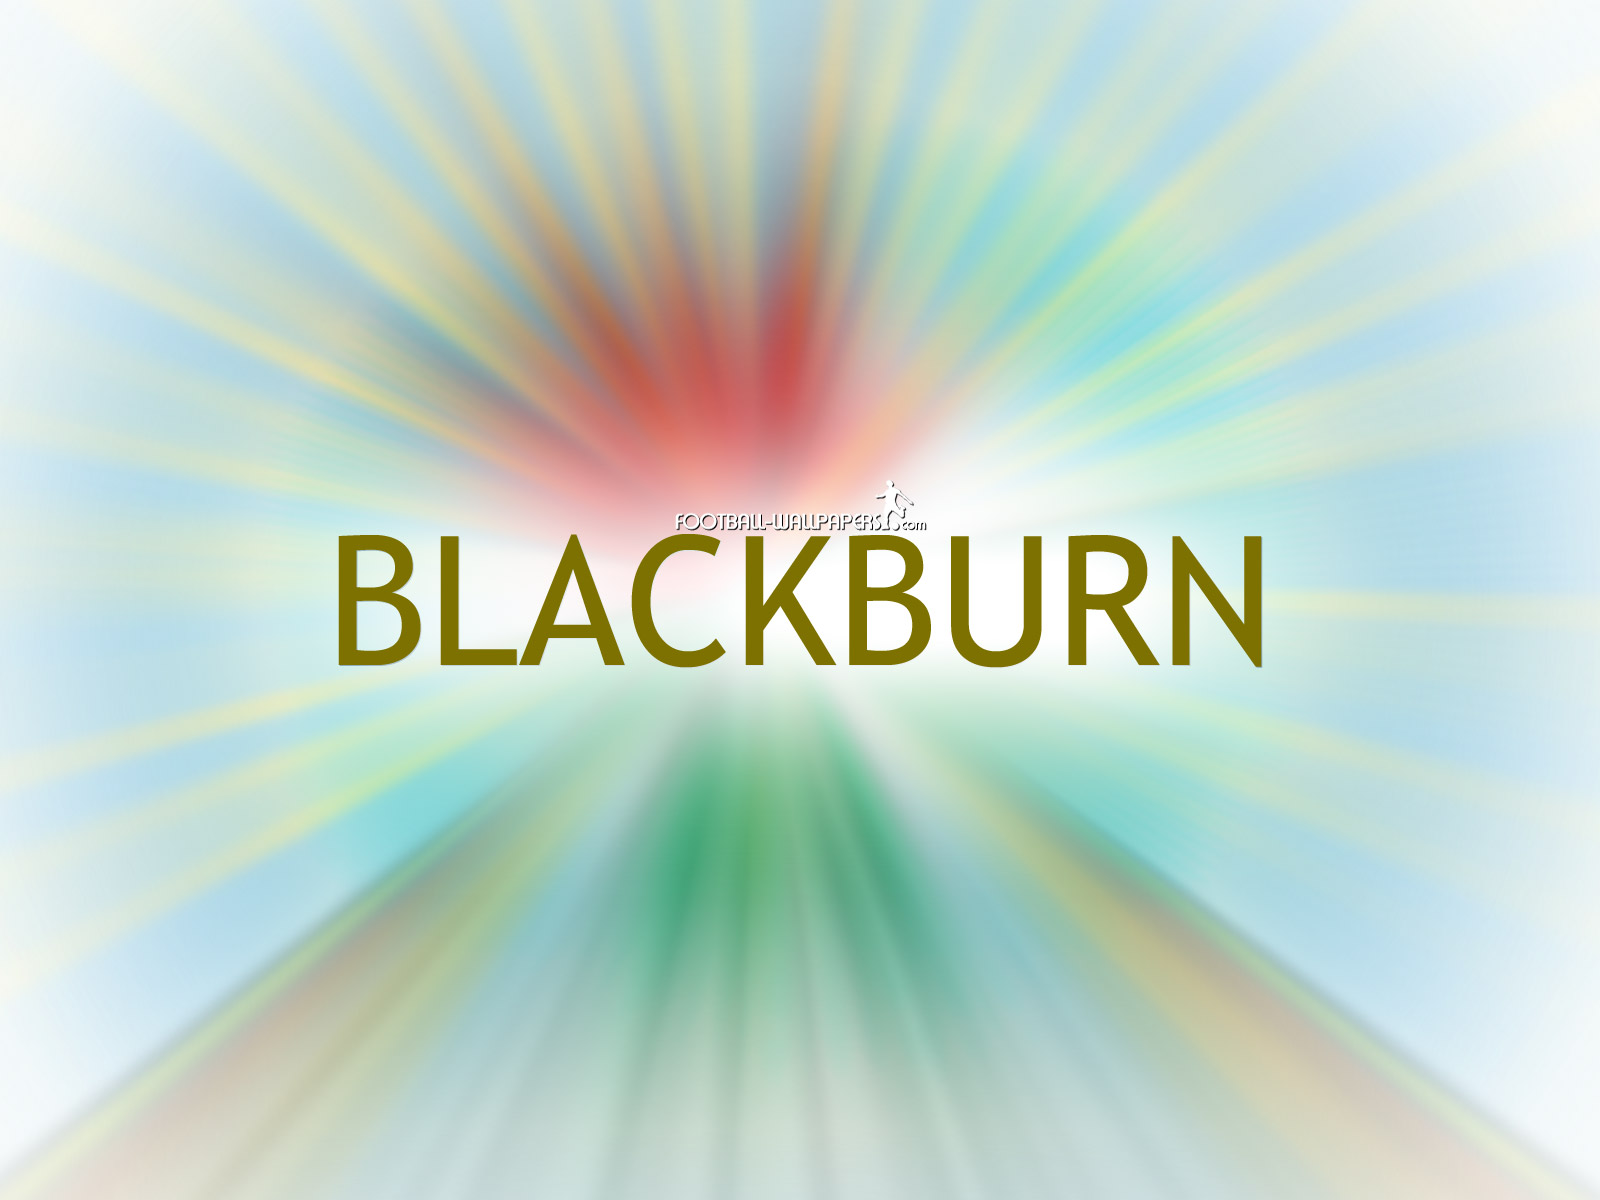 Blackburn Wallpaper Football And Videos